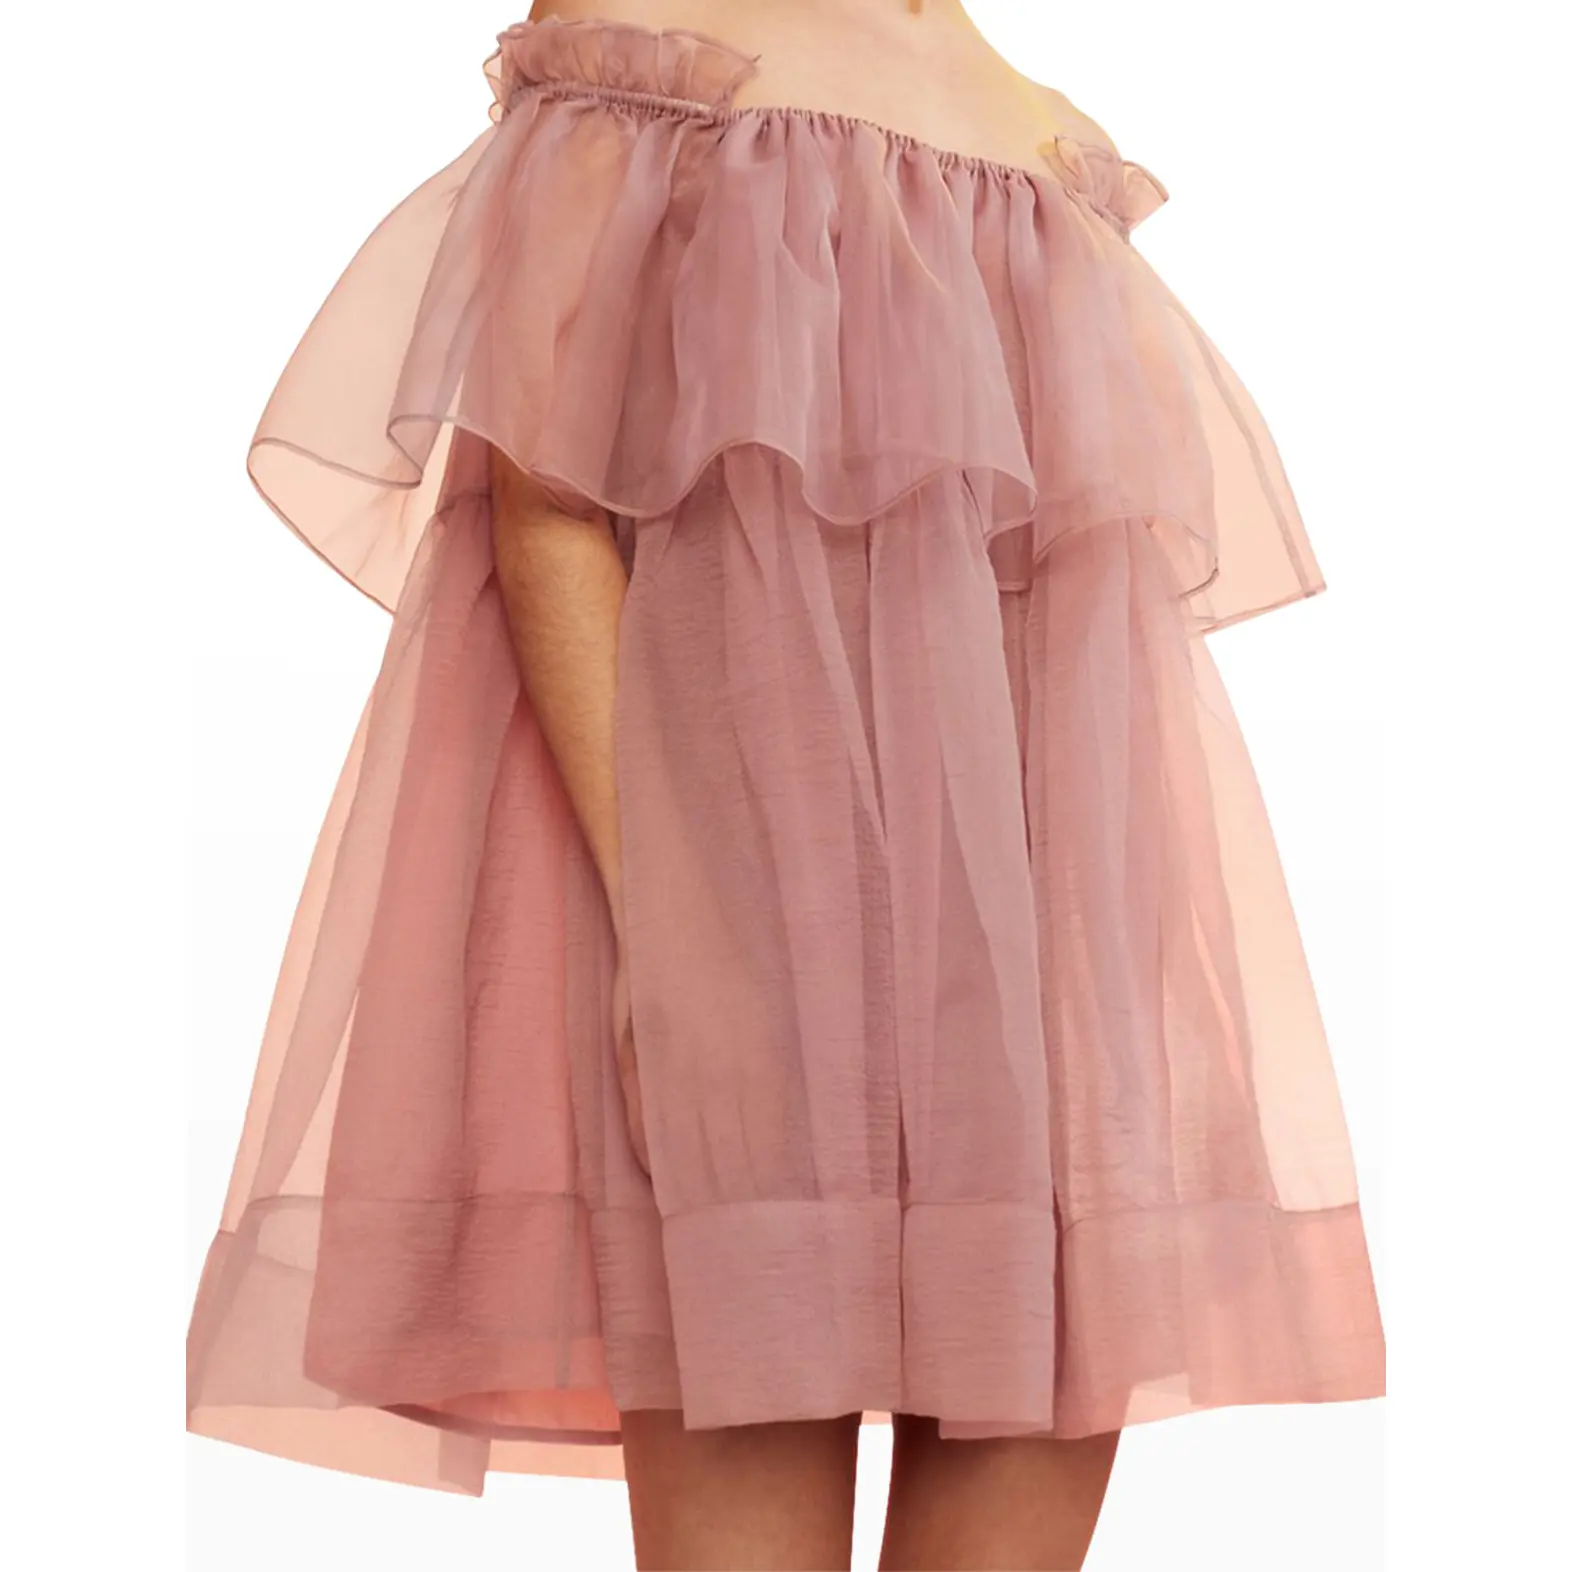 Mini robe en Organza à épaules dénudées, robe transparente fantaisie avec manches courtes, robe de soirée